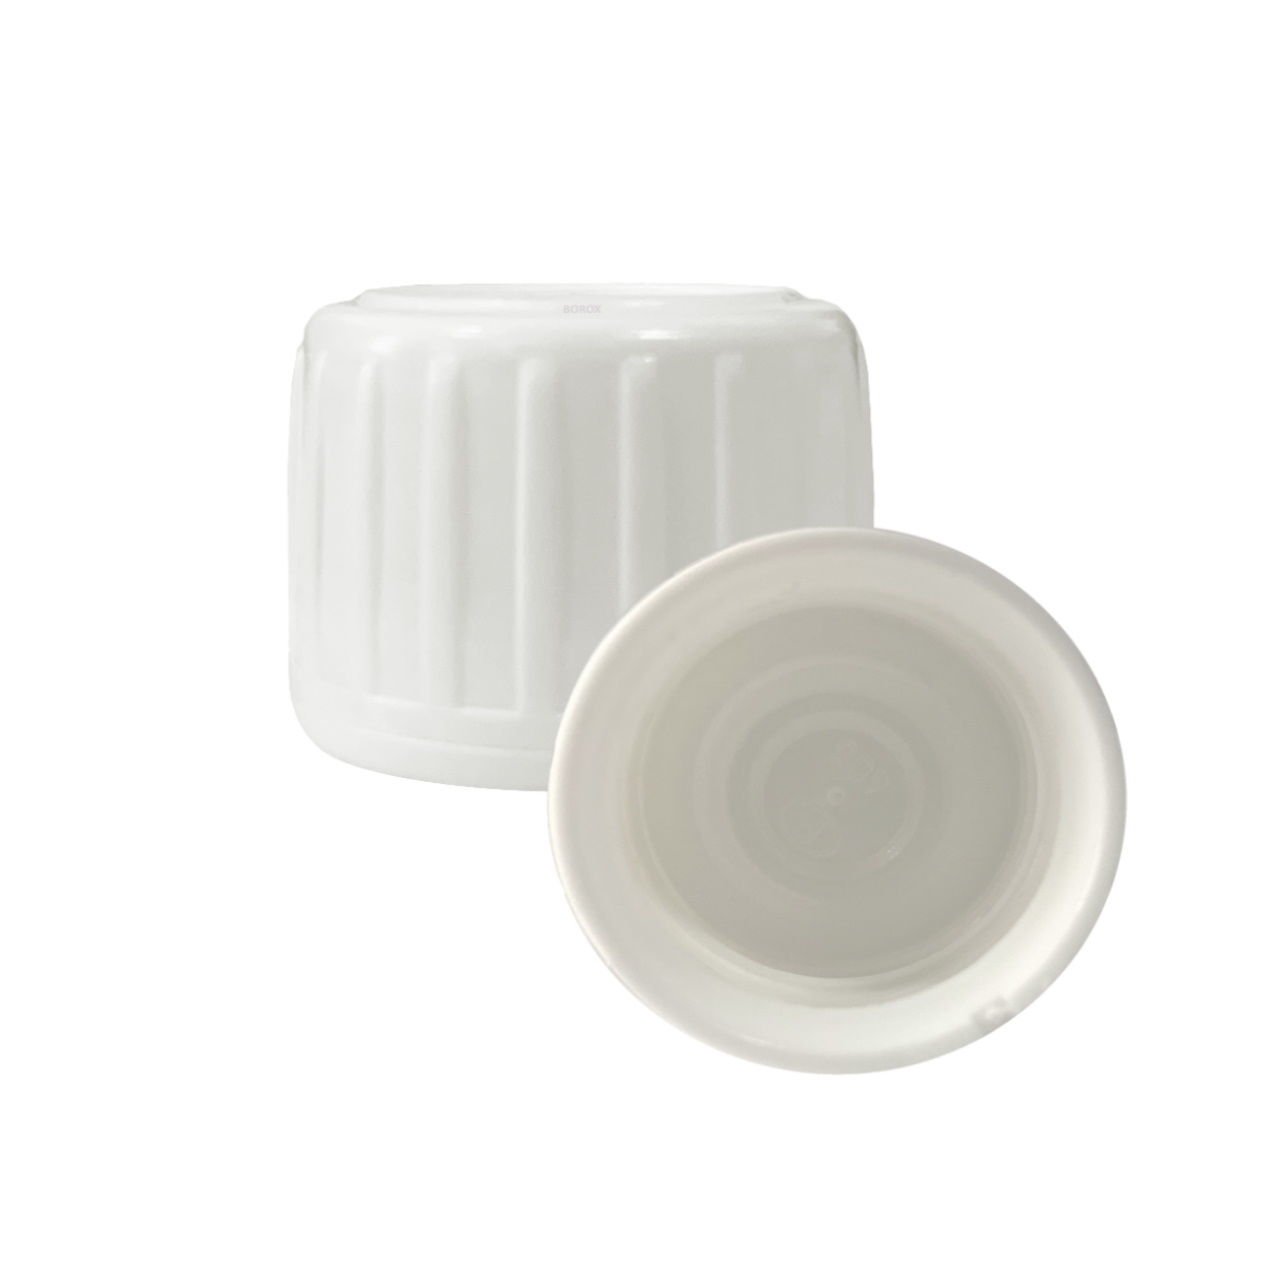 31pp Beyaz Kilitli Kapak - PE Contalı - 31 mm Ağızlı Şişeler İçin Uygundur